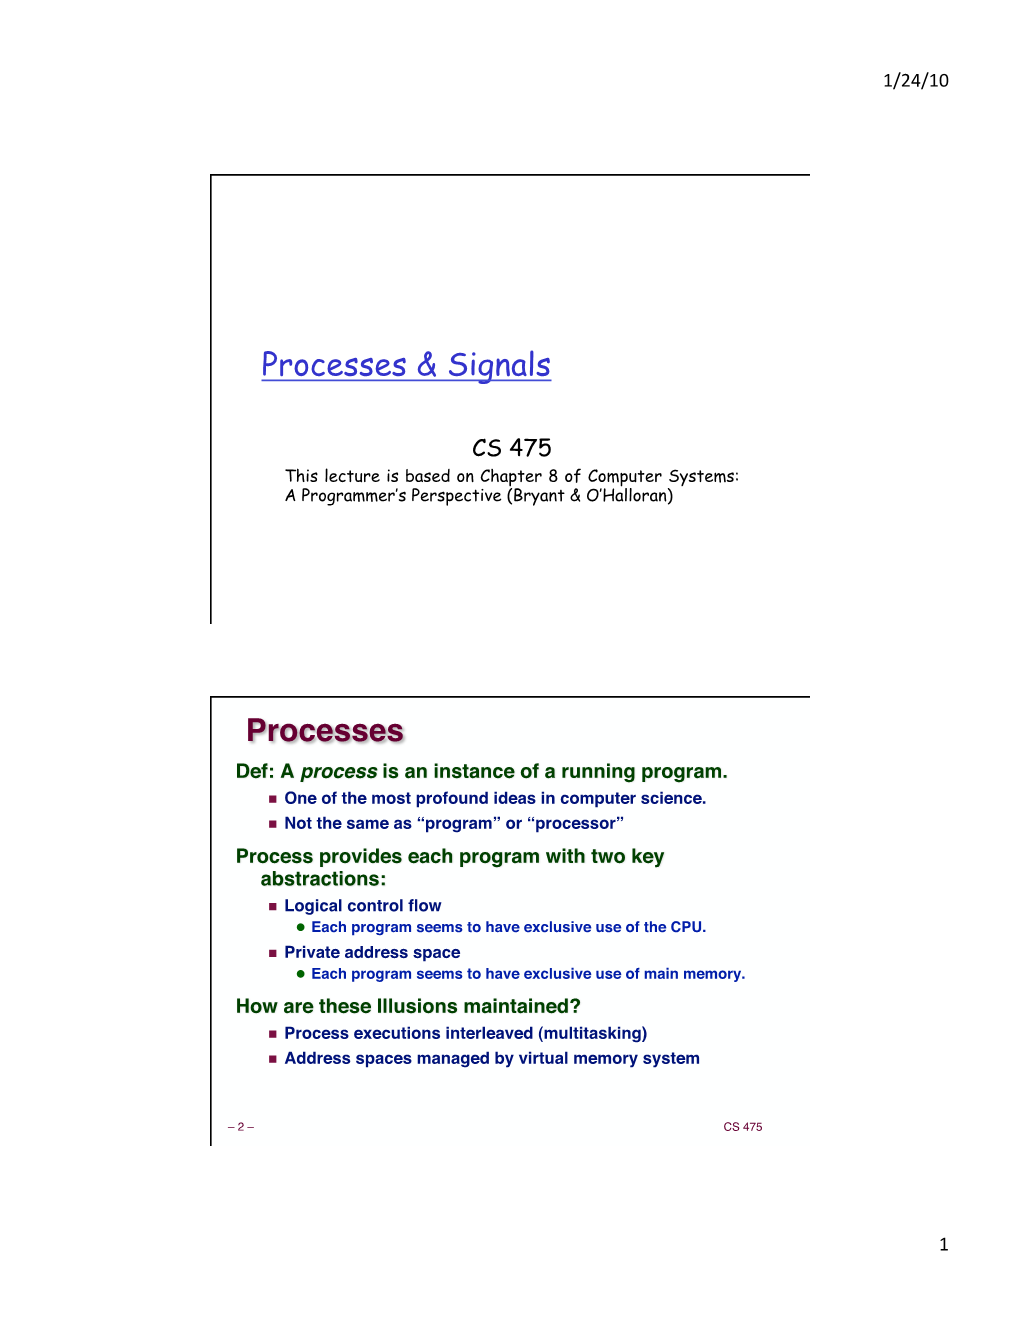 Processes & Signals Processes